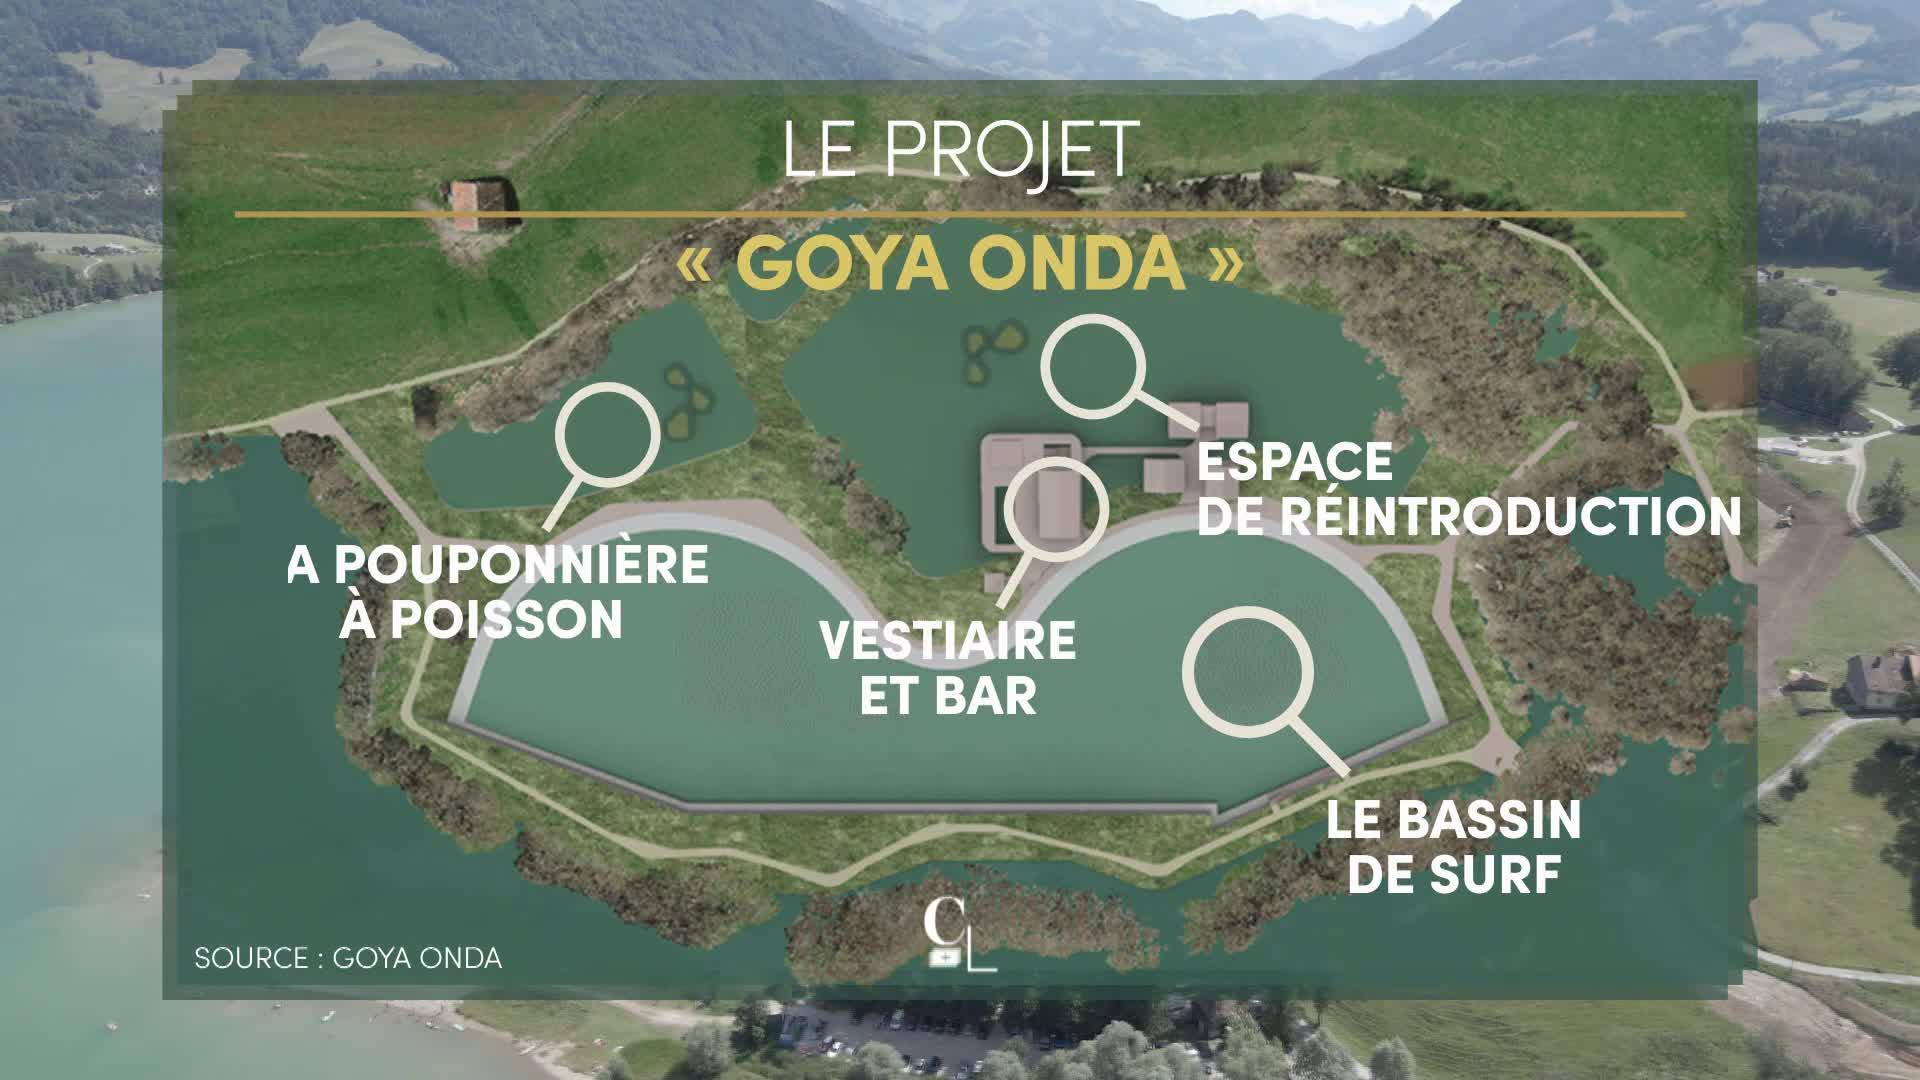 Le projet "Goya Onda" proposait la création d'un bassin de surf et d'un espace naturel protégé. [RTS - Goya Onda]